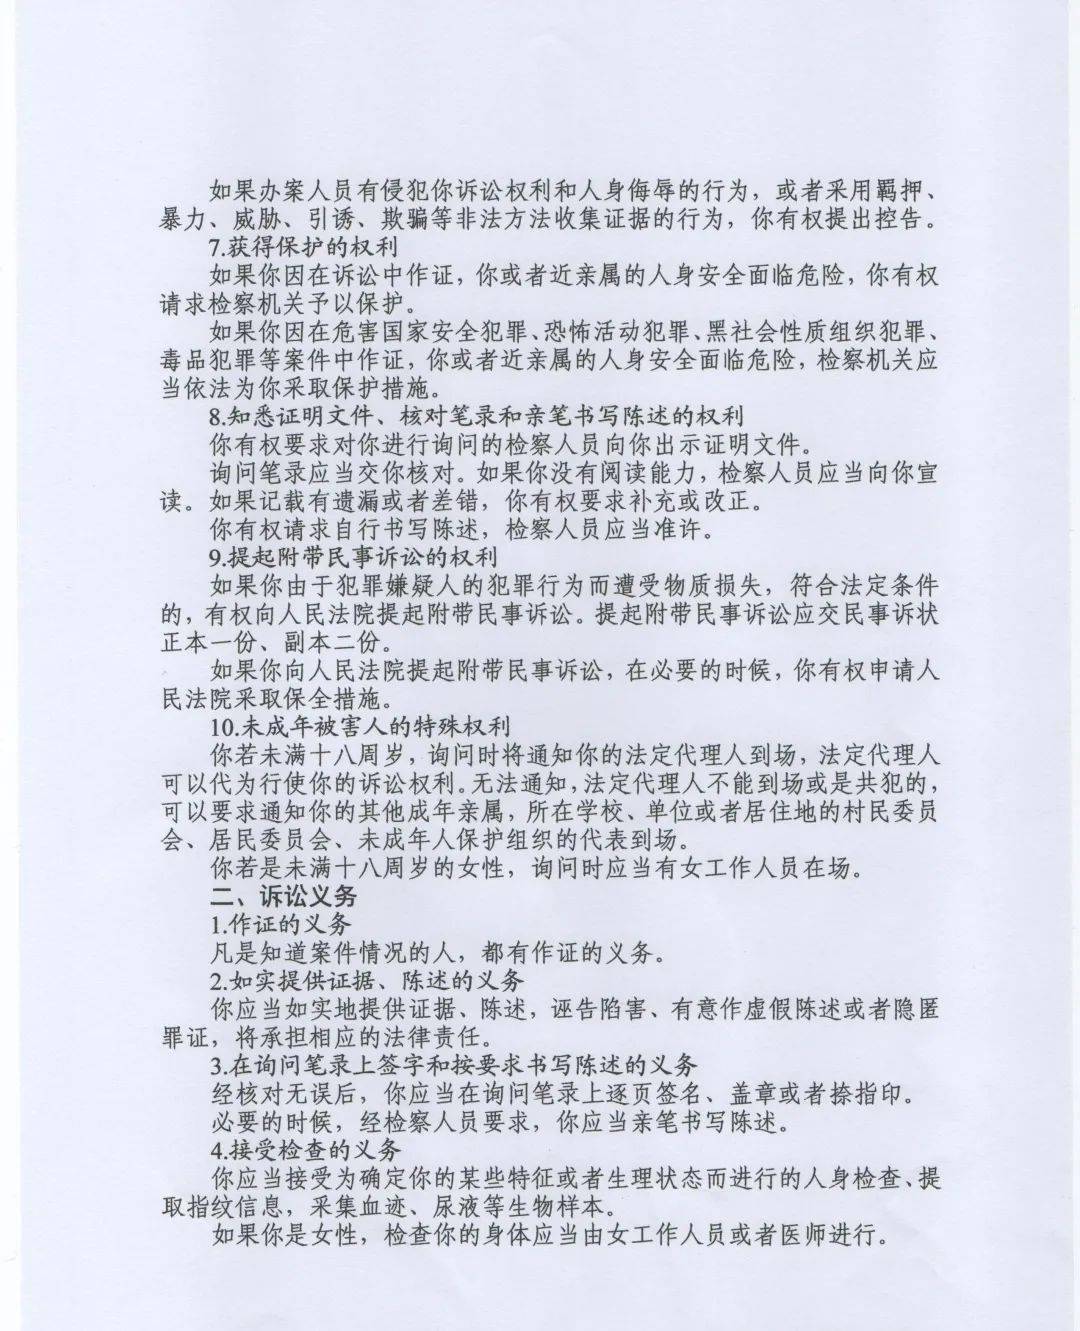 巴东检察院公告:戴兴明涉嫌放火罪一案被害人诉讼权利义务告知书